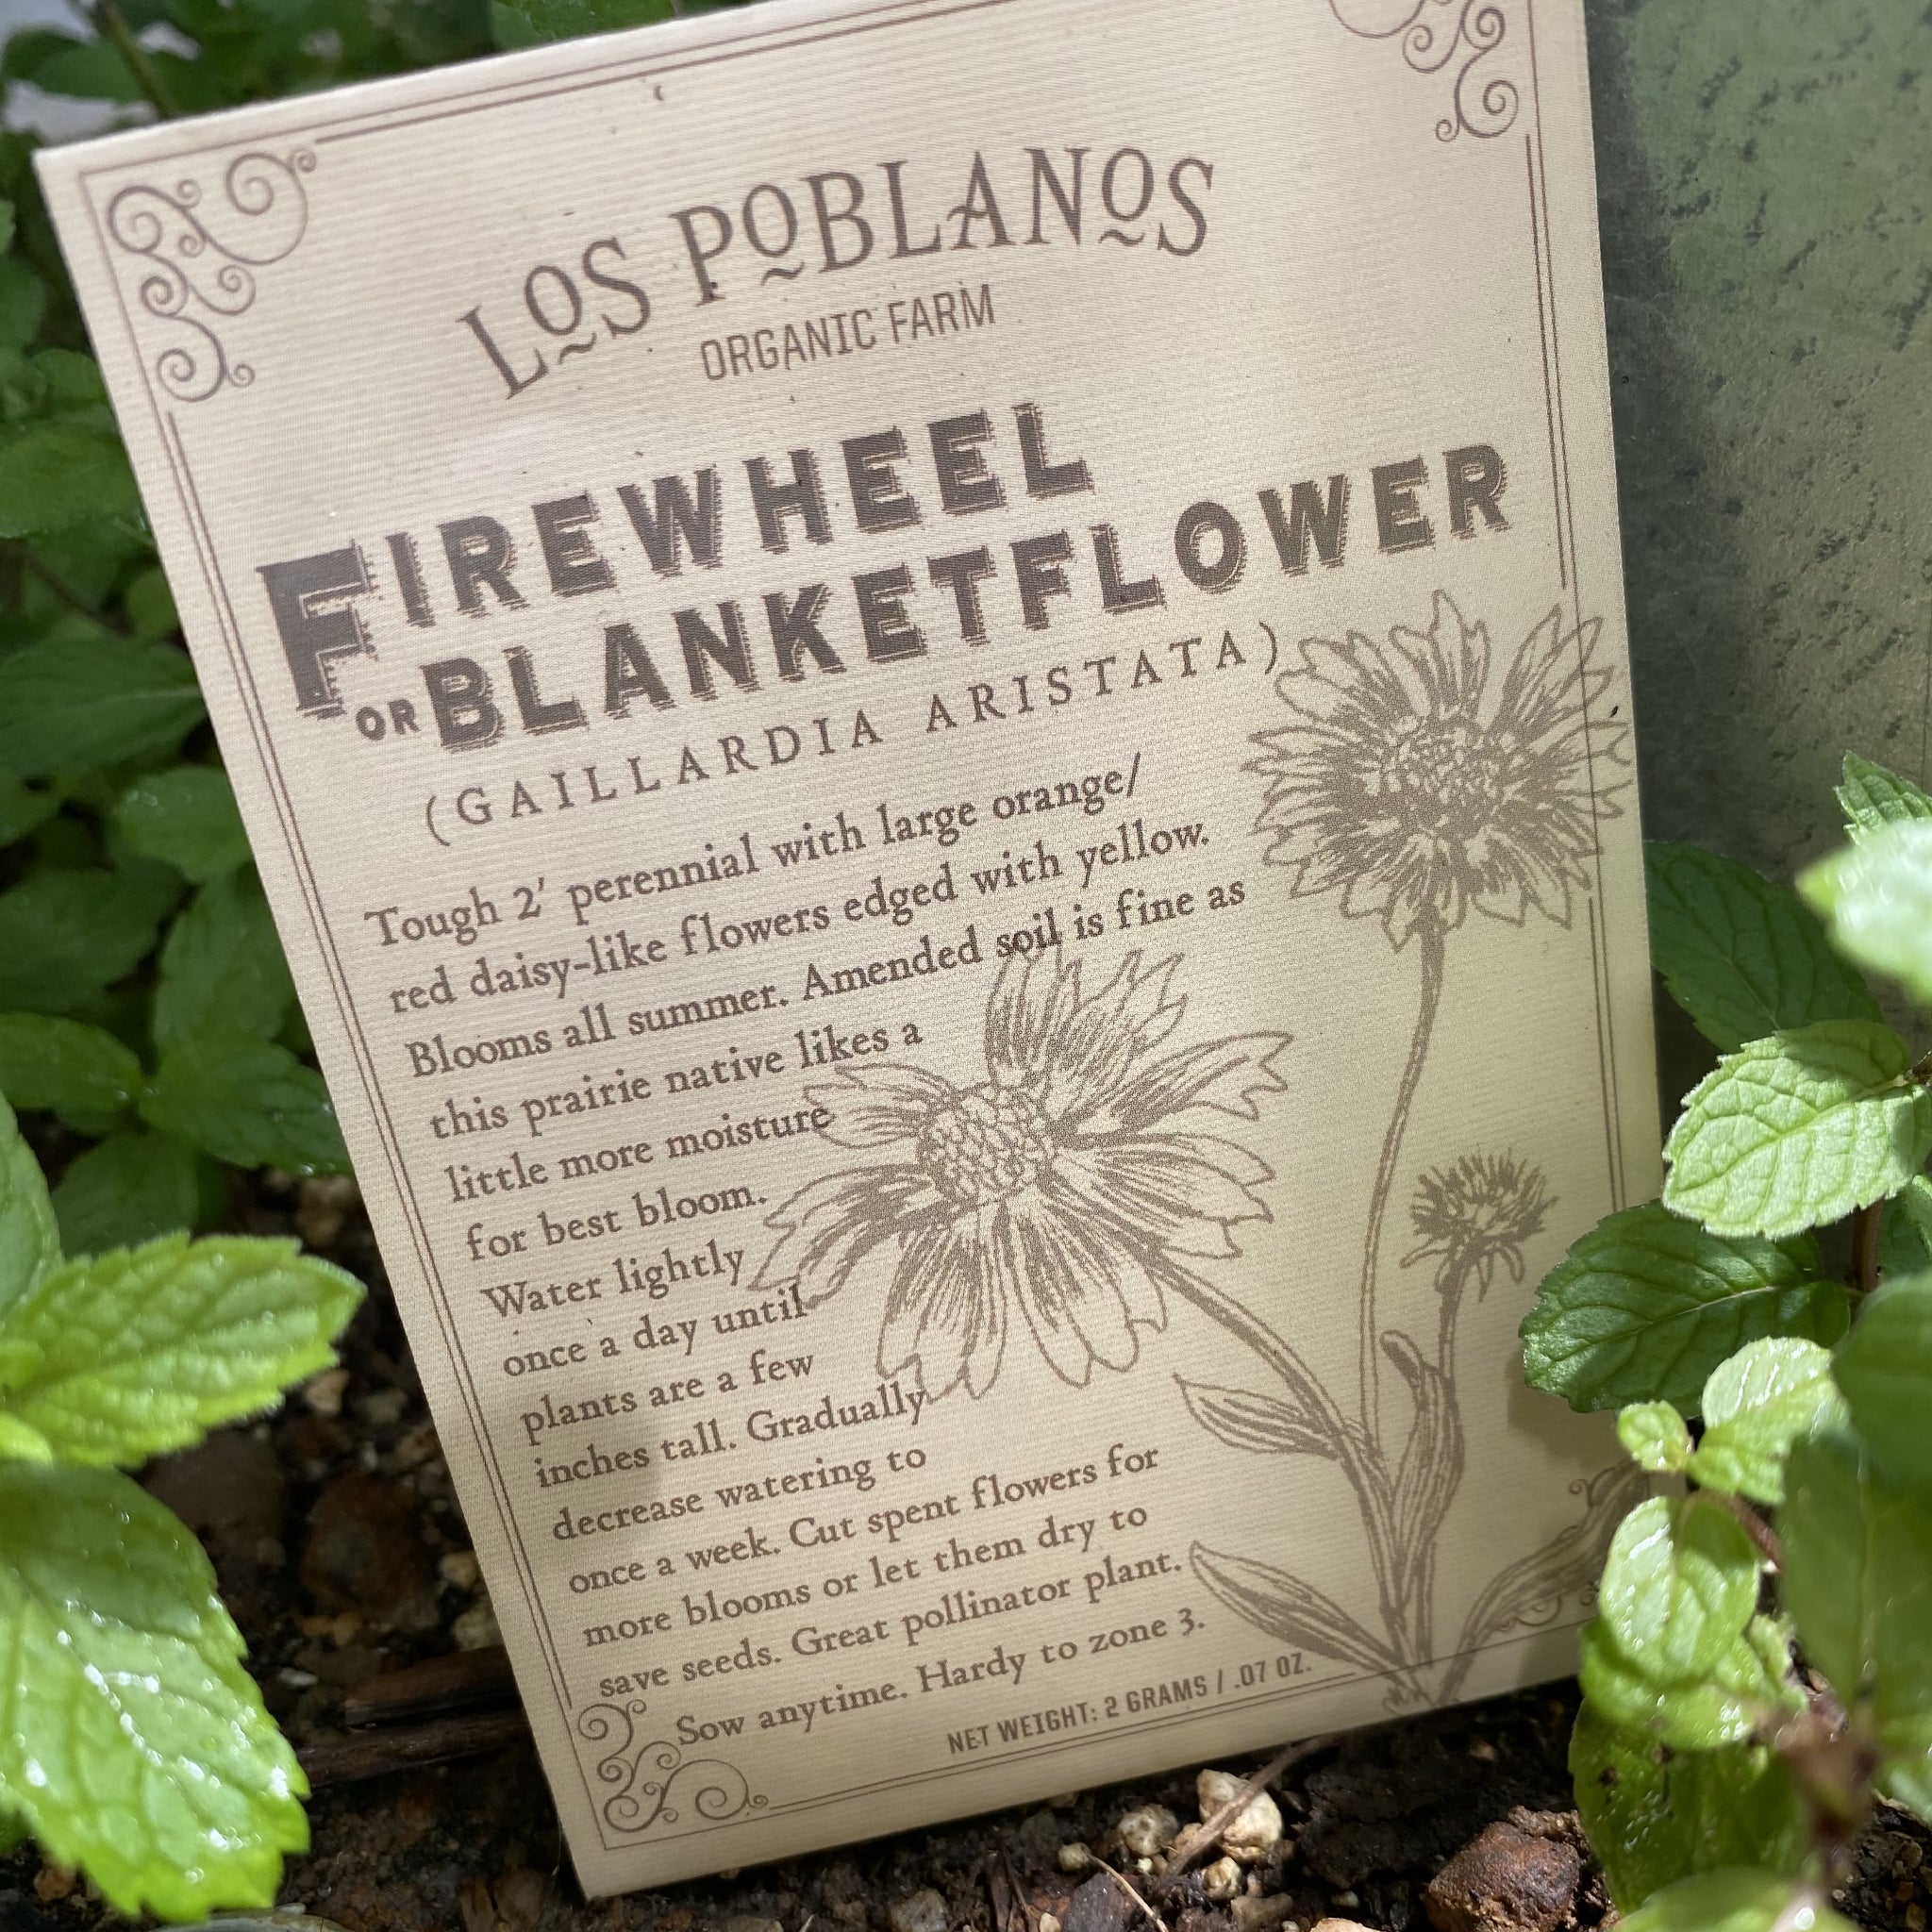 Los Poblanos Firewheel or Blanketflower Seeds